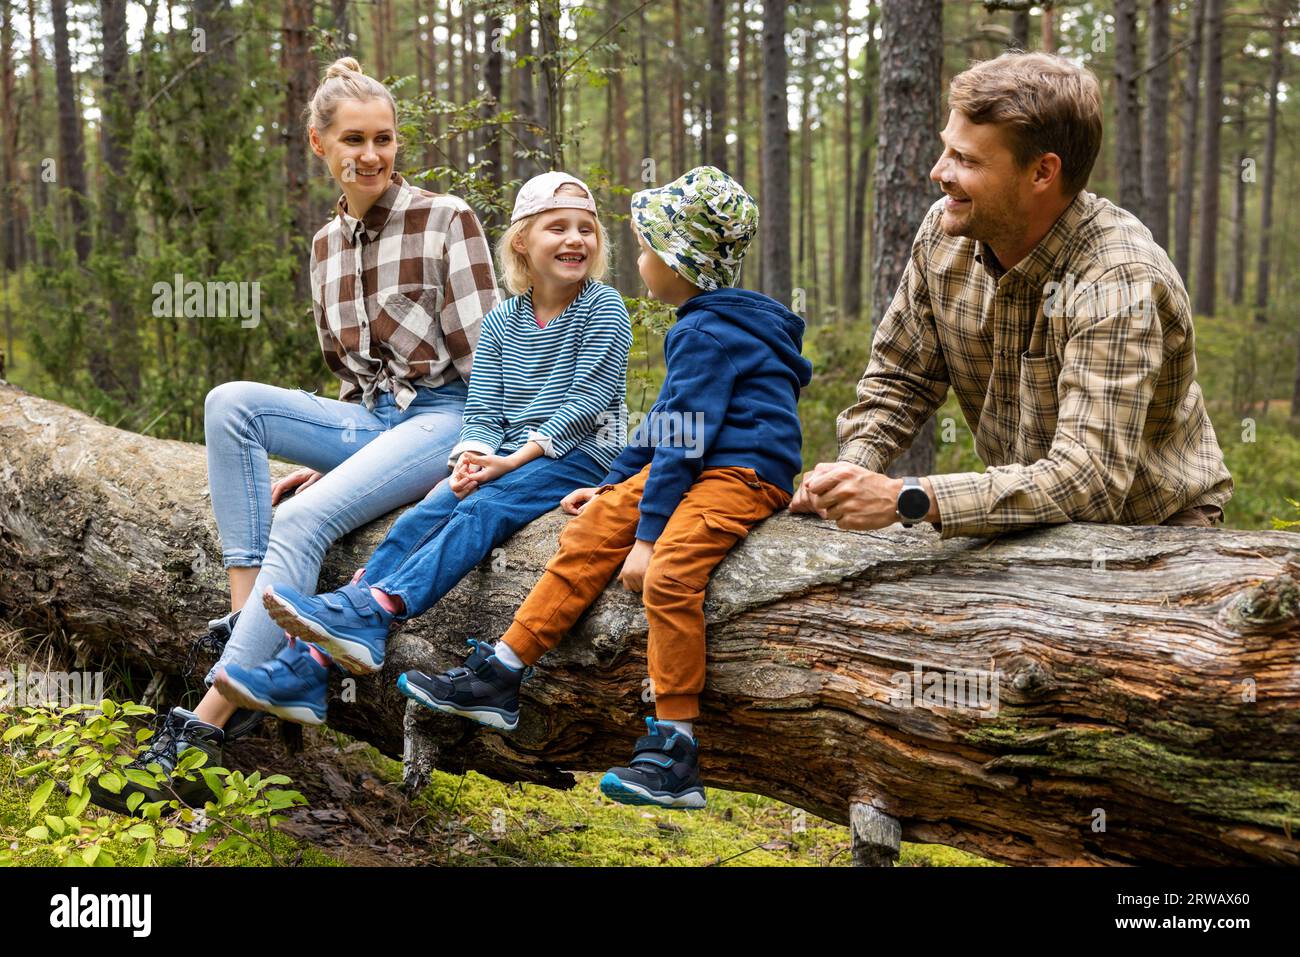 Glückliche Familie mit Kindern, die nach einem Spaziergang im Wald auf umgestürzten Bäumen sitzen und sich ausruhen. Outdoor-Aktivitäten, Naturabenteuer Stockfoto